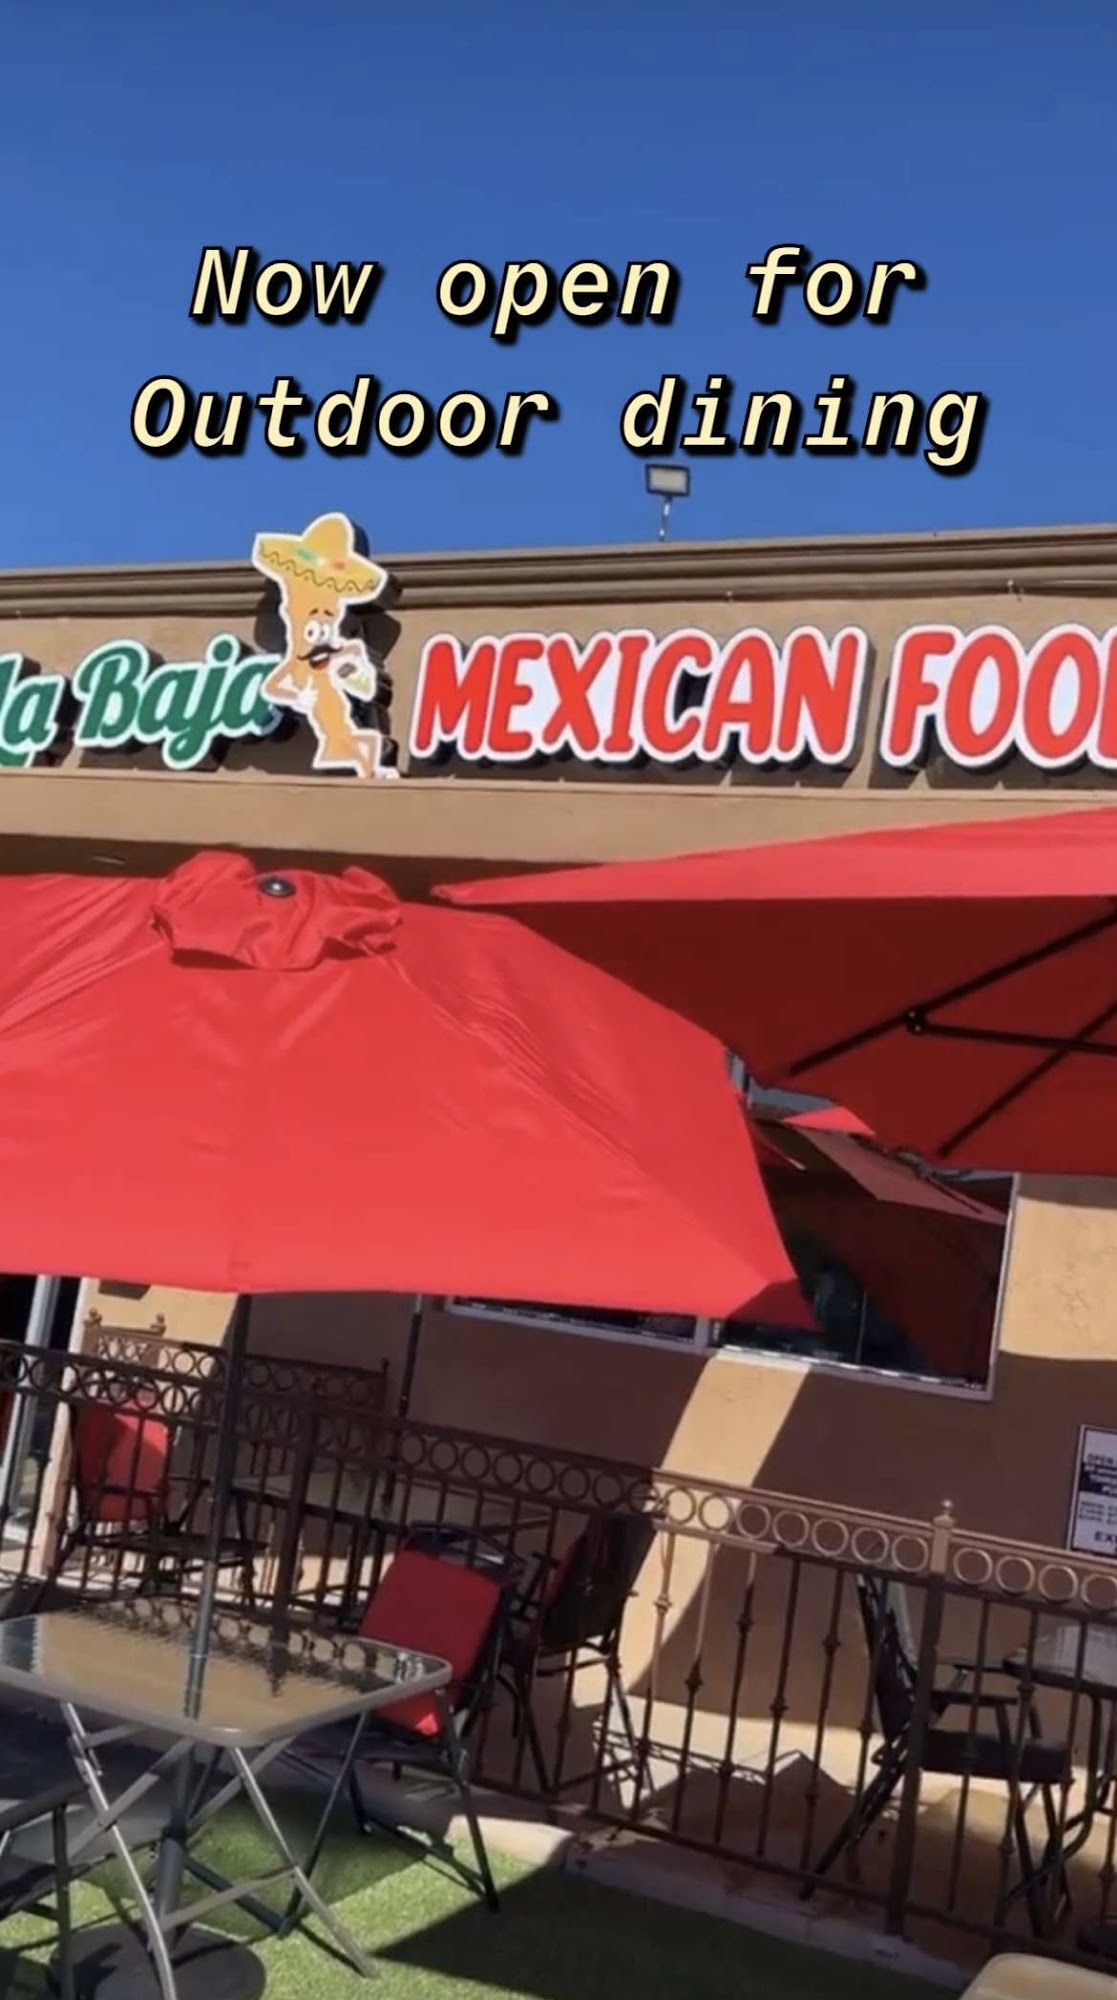 La Baja Mexican Food